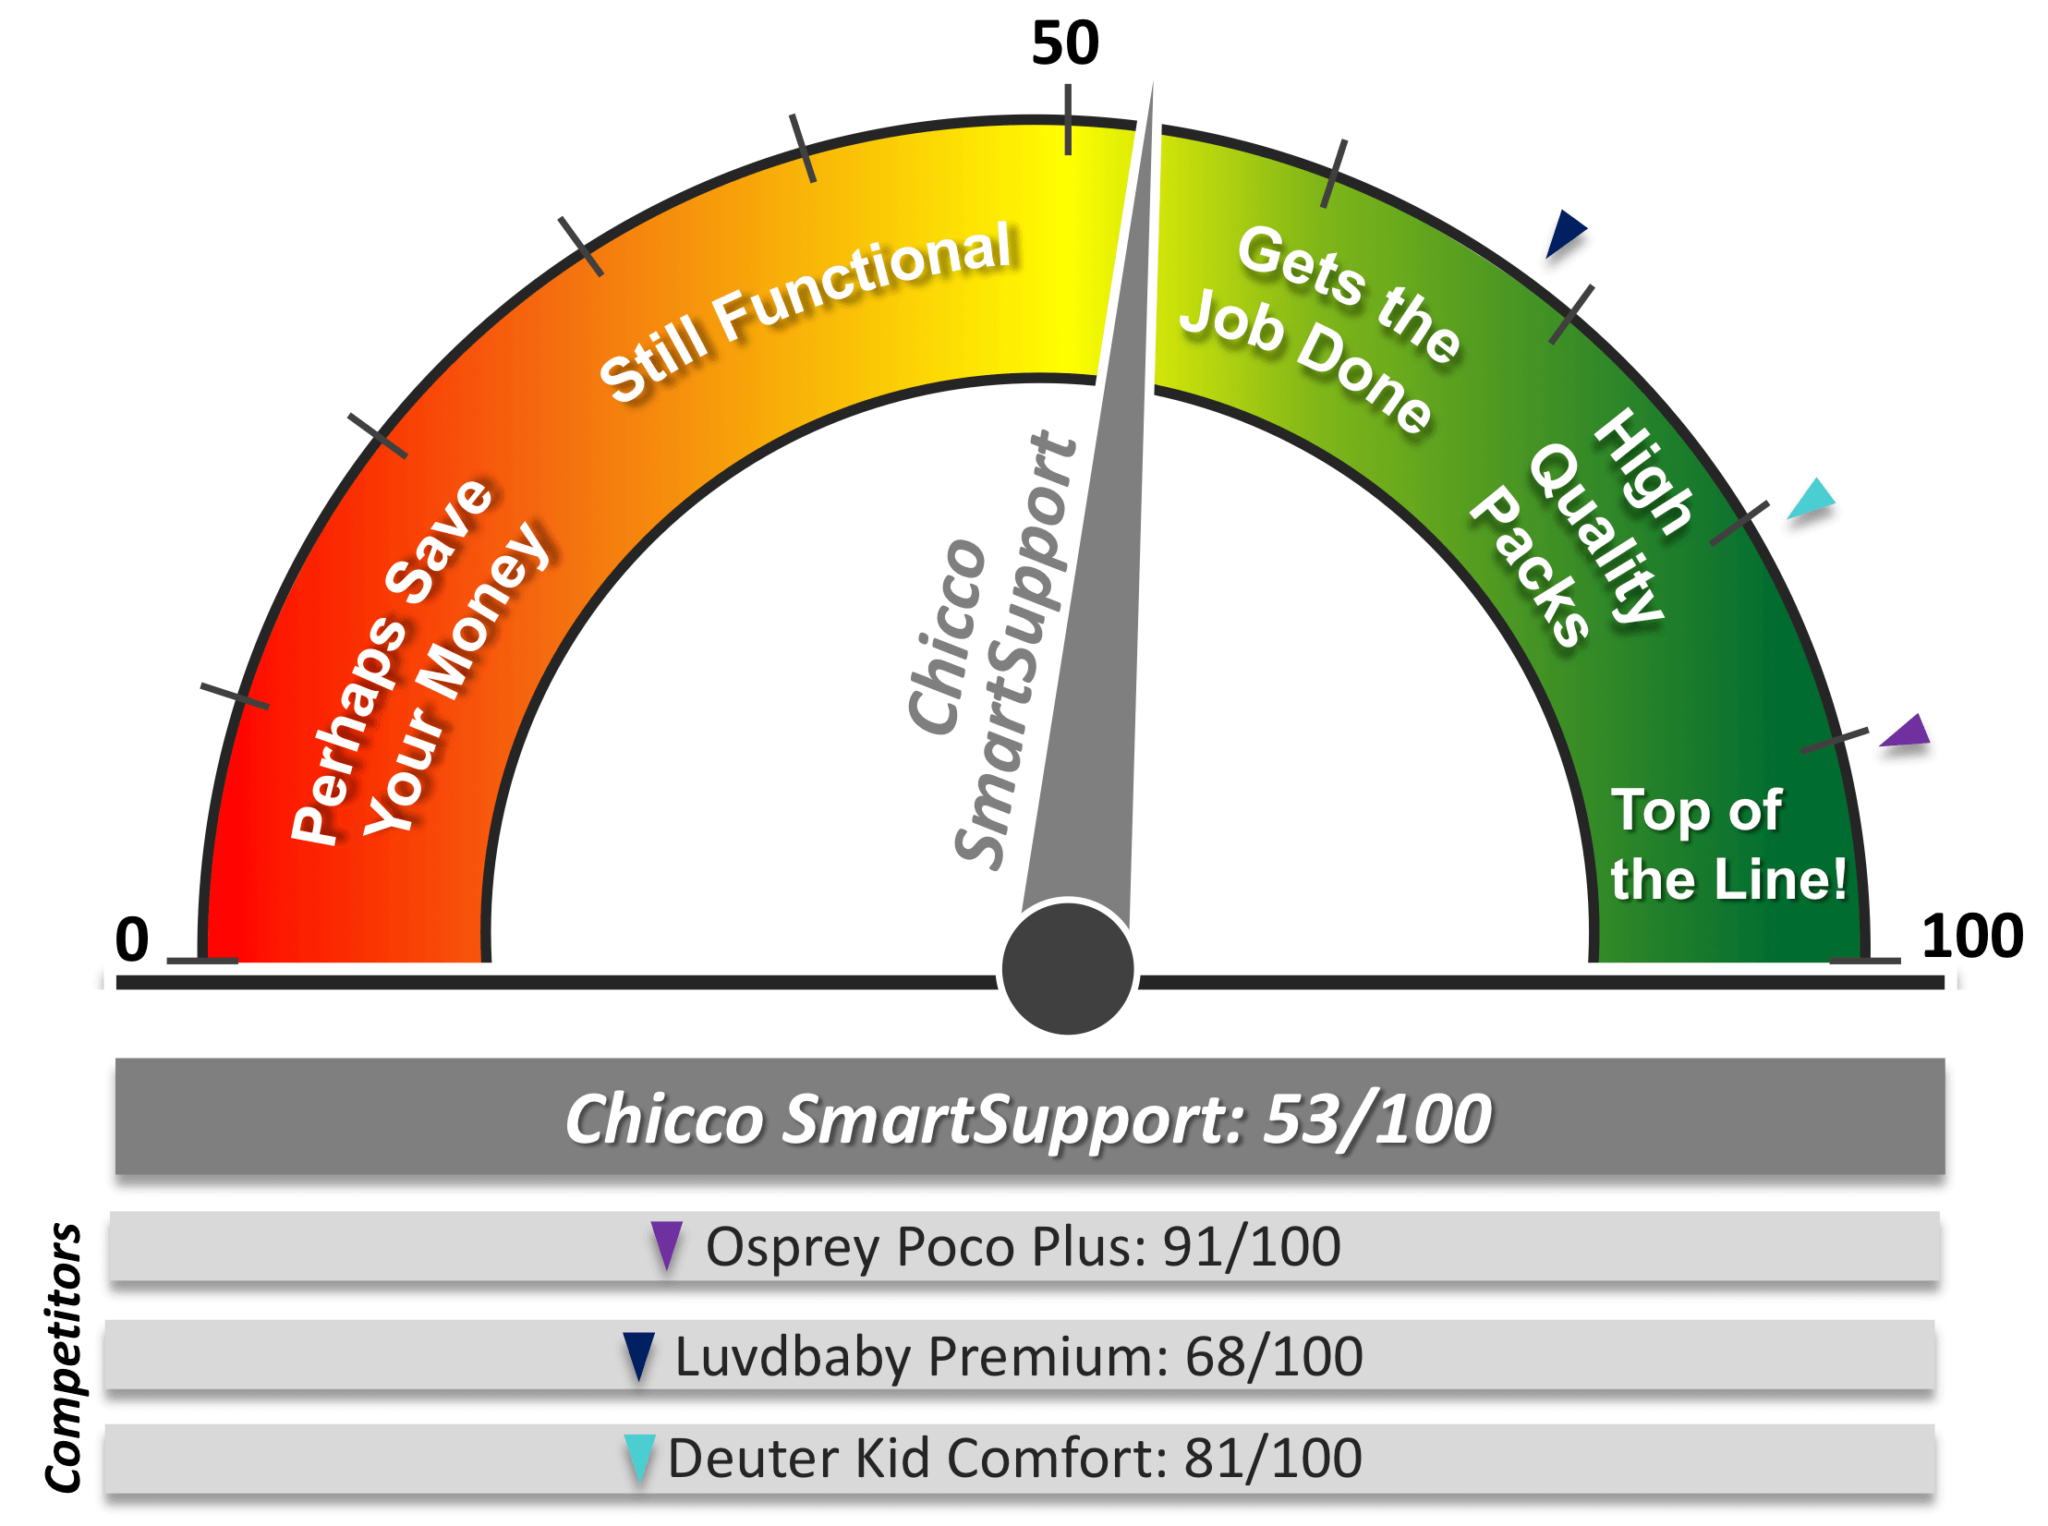 Chicco SmartSupport vs Competitors